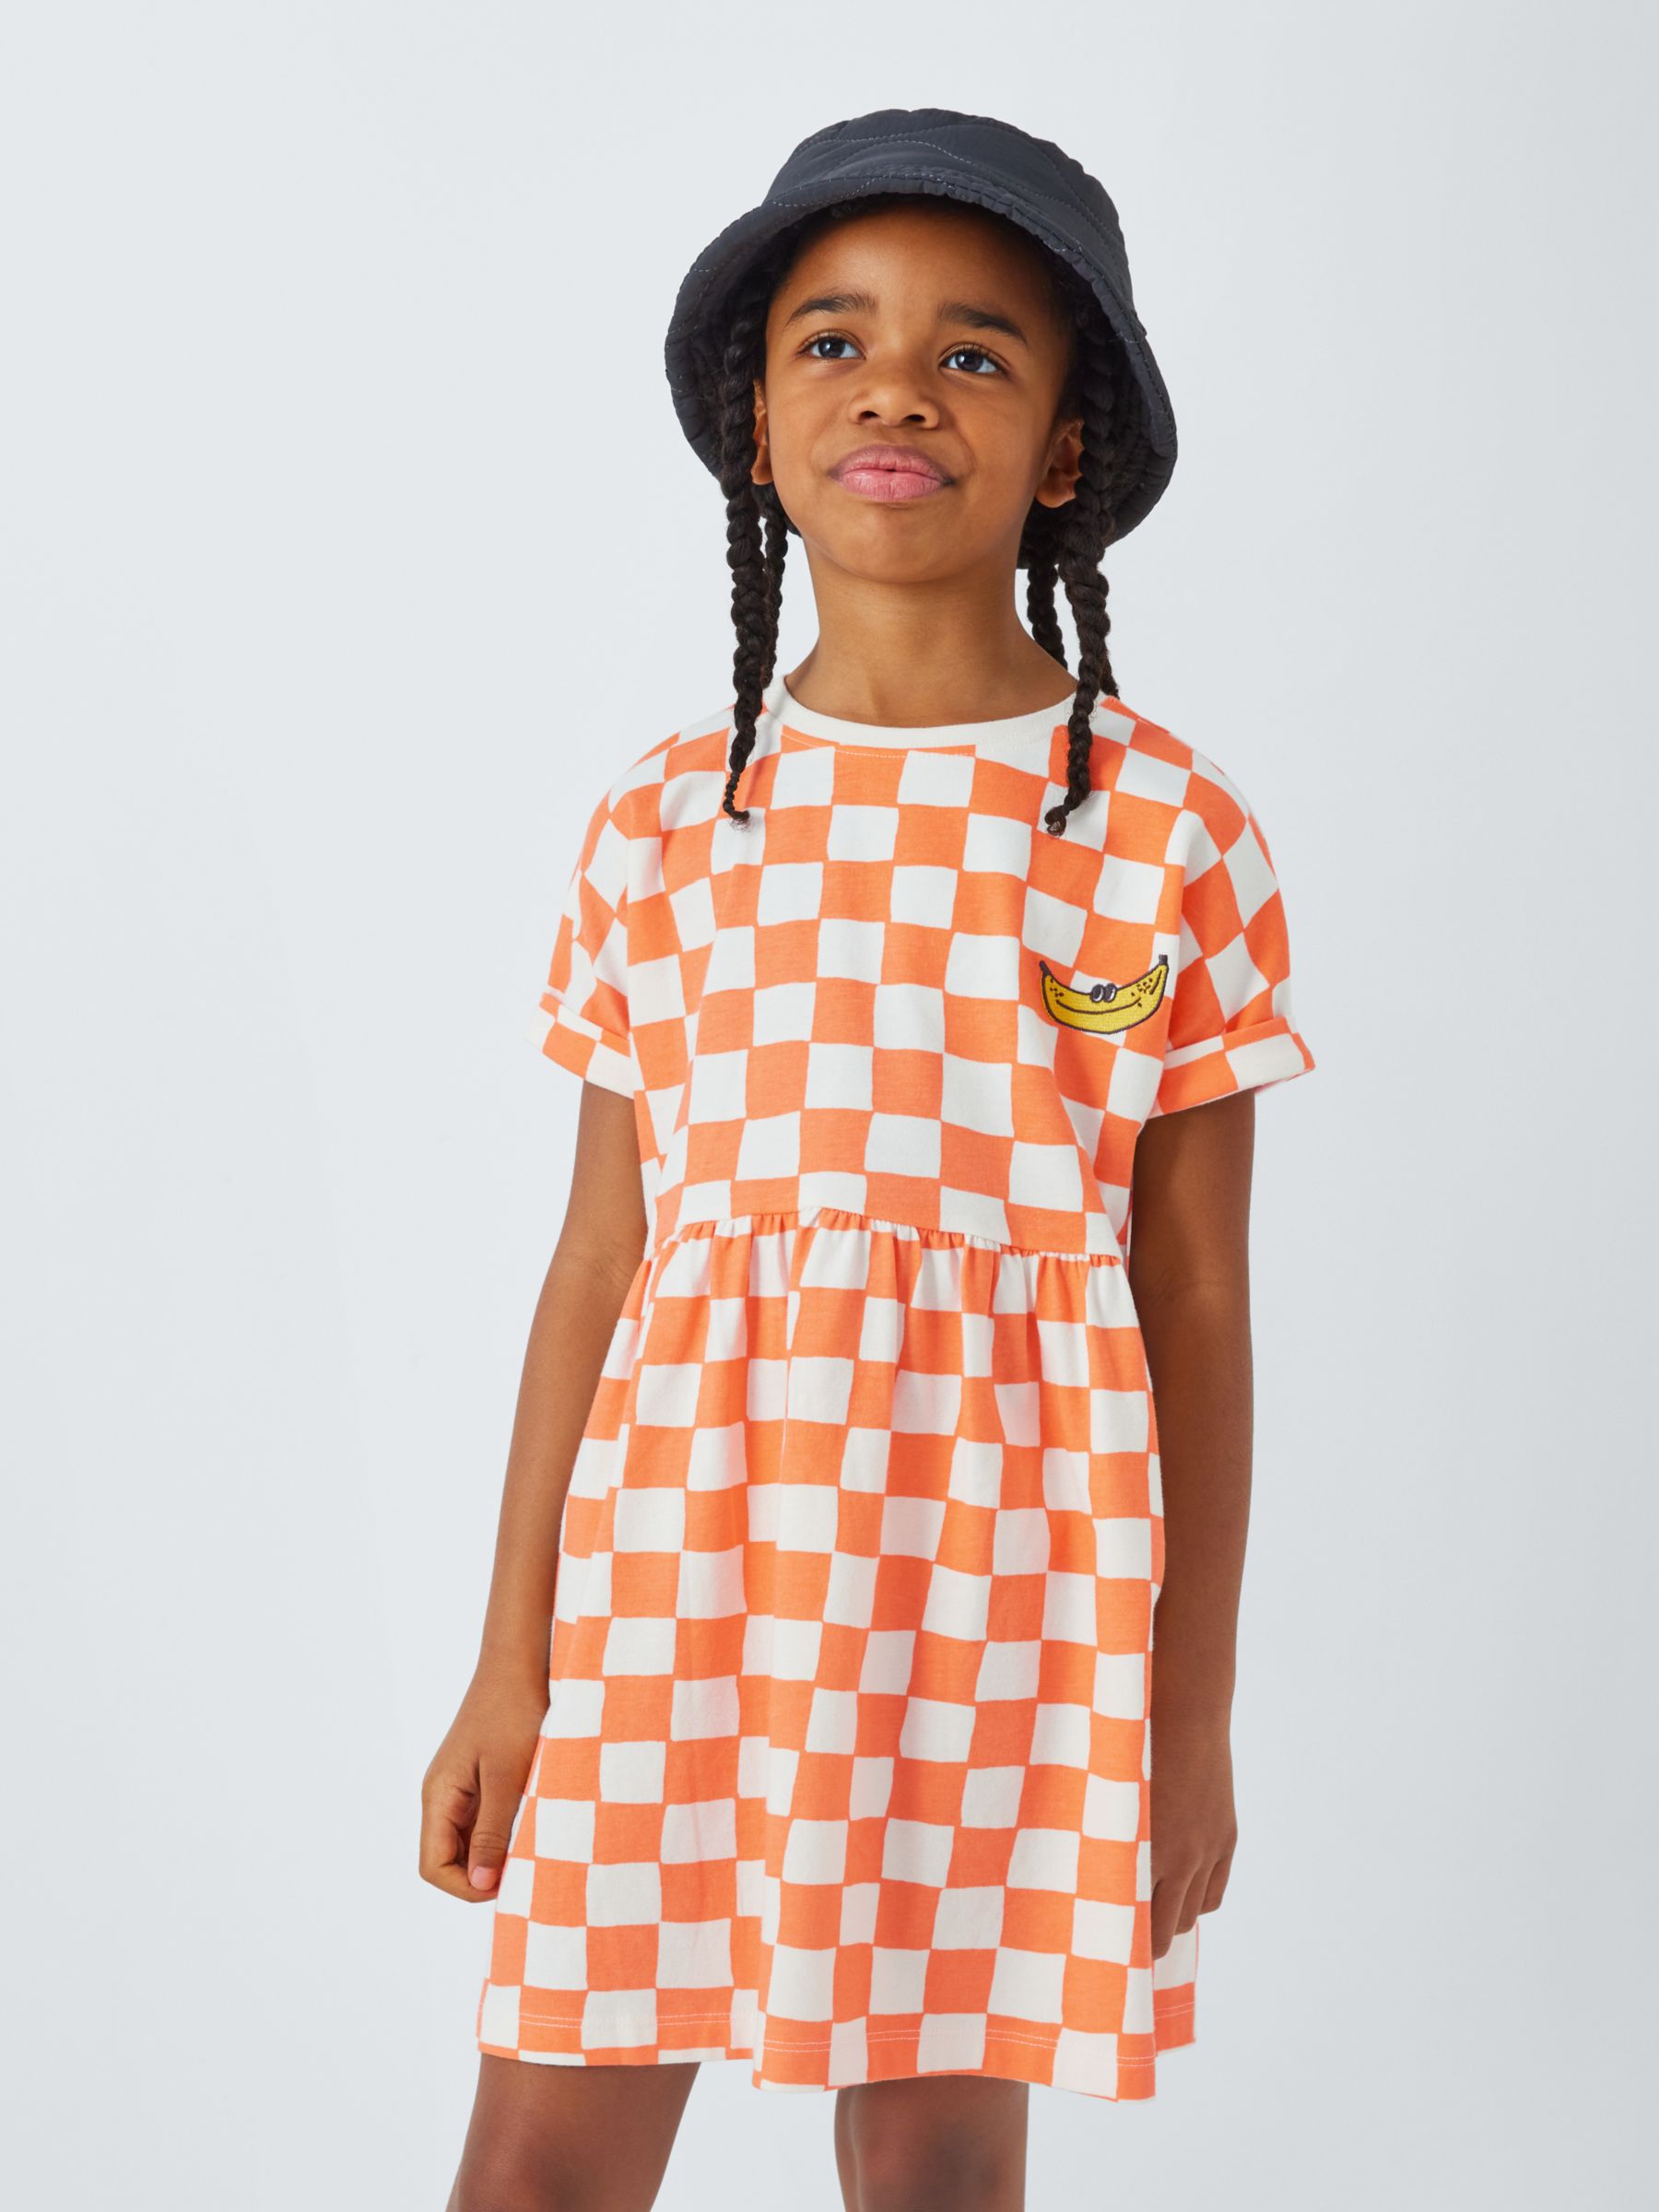 John Lewis ANYDAY Kids' Checker Dress, Gardenia/Tangerine, 11 years